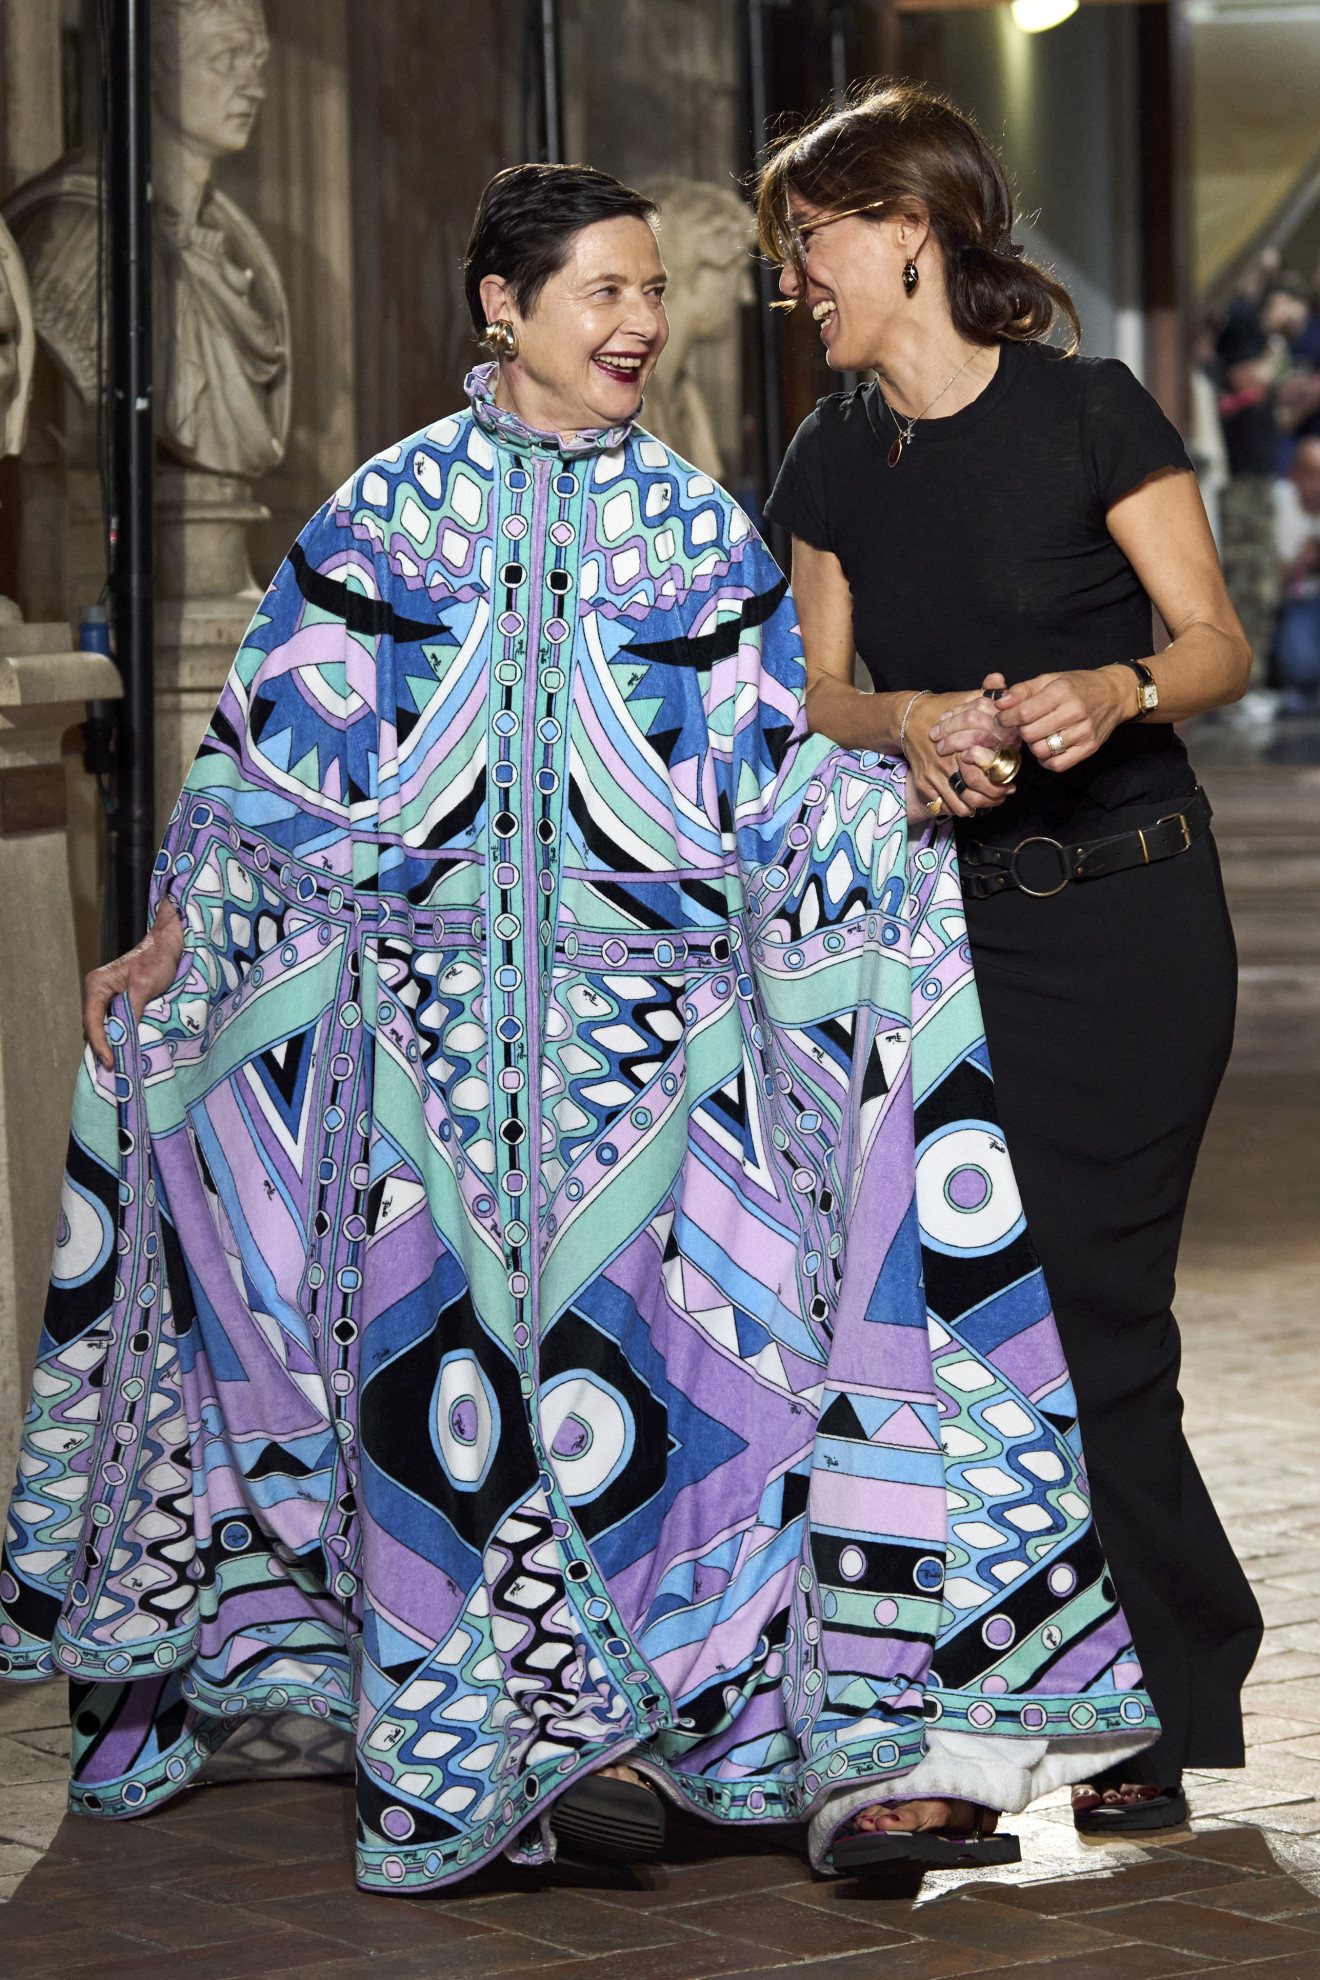 Ο οίκος Pucci γιόρτασε τα 60 χρόνια του print Vivara με την Isabella Rossellini στην πασαρέλα